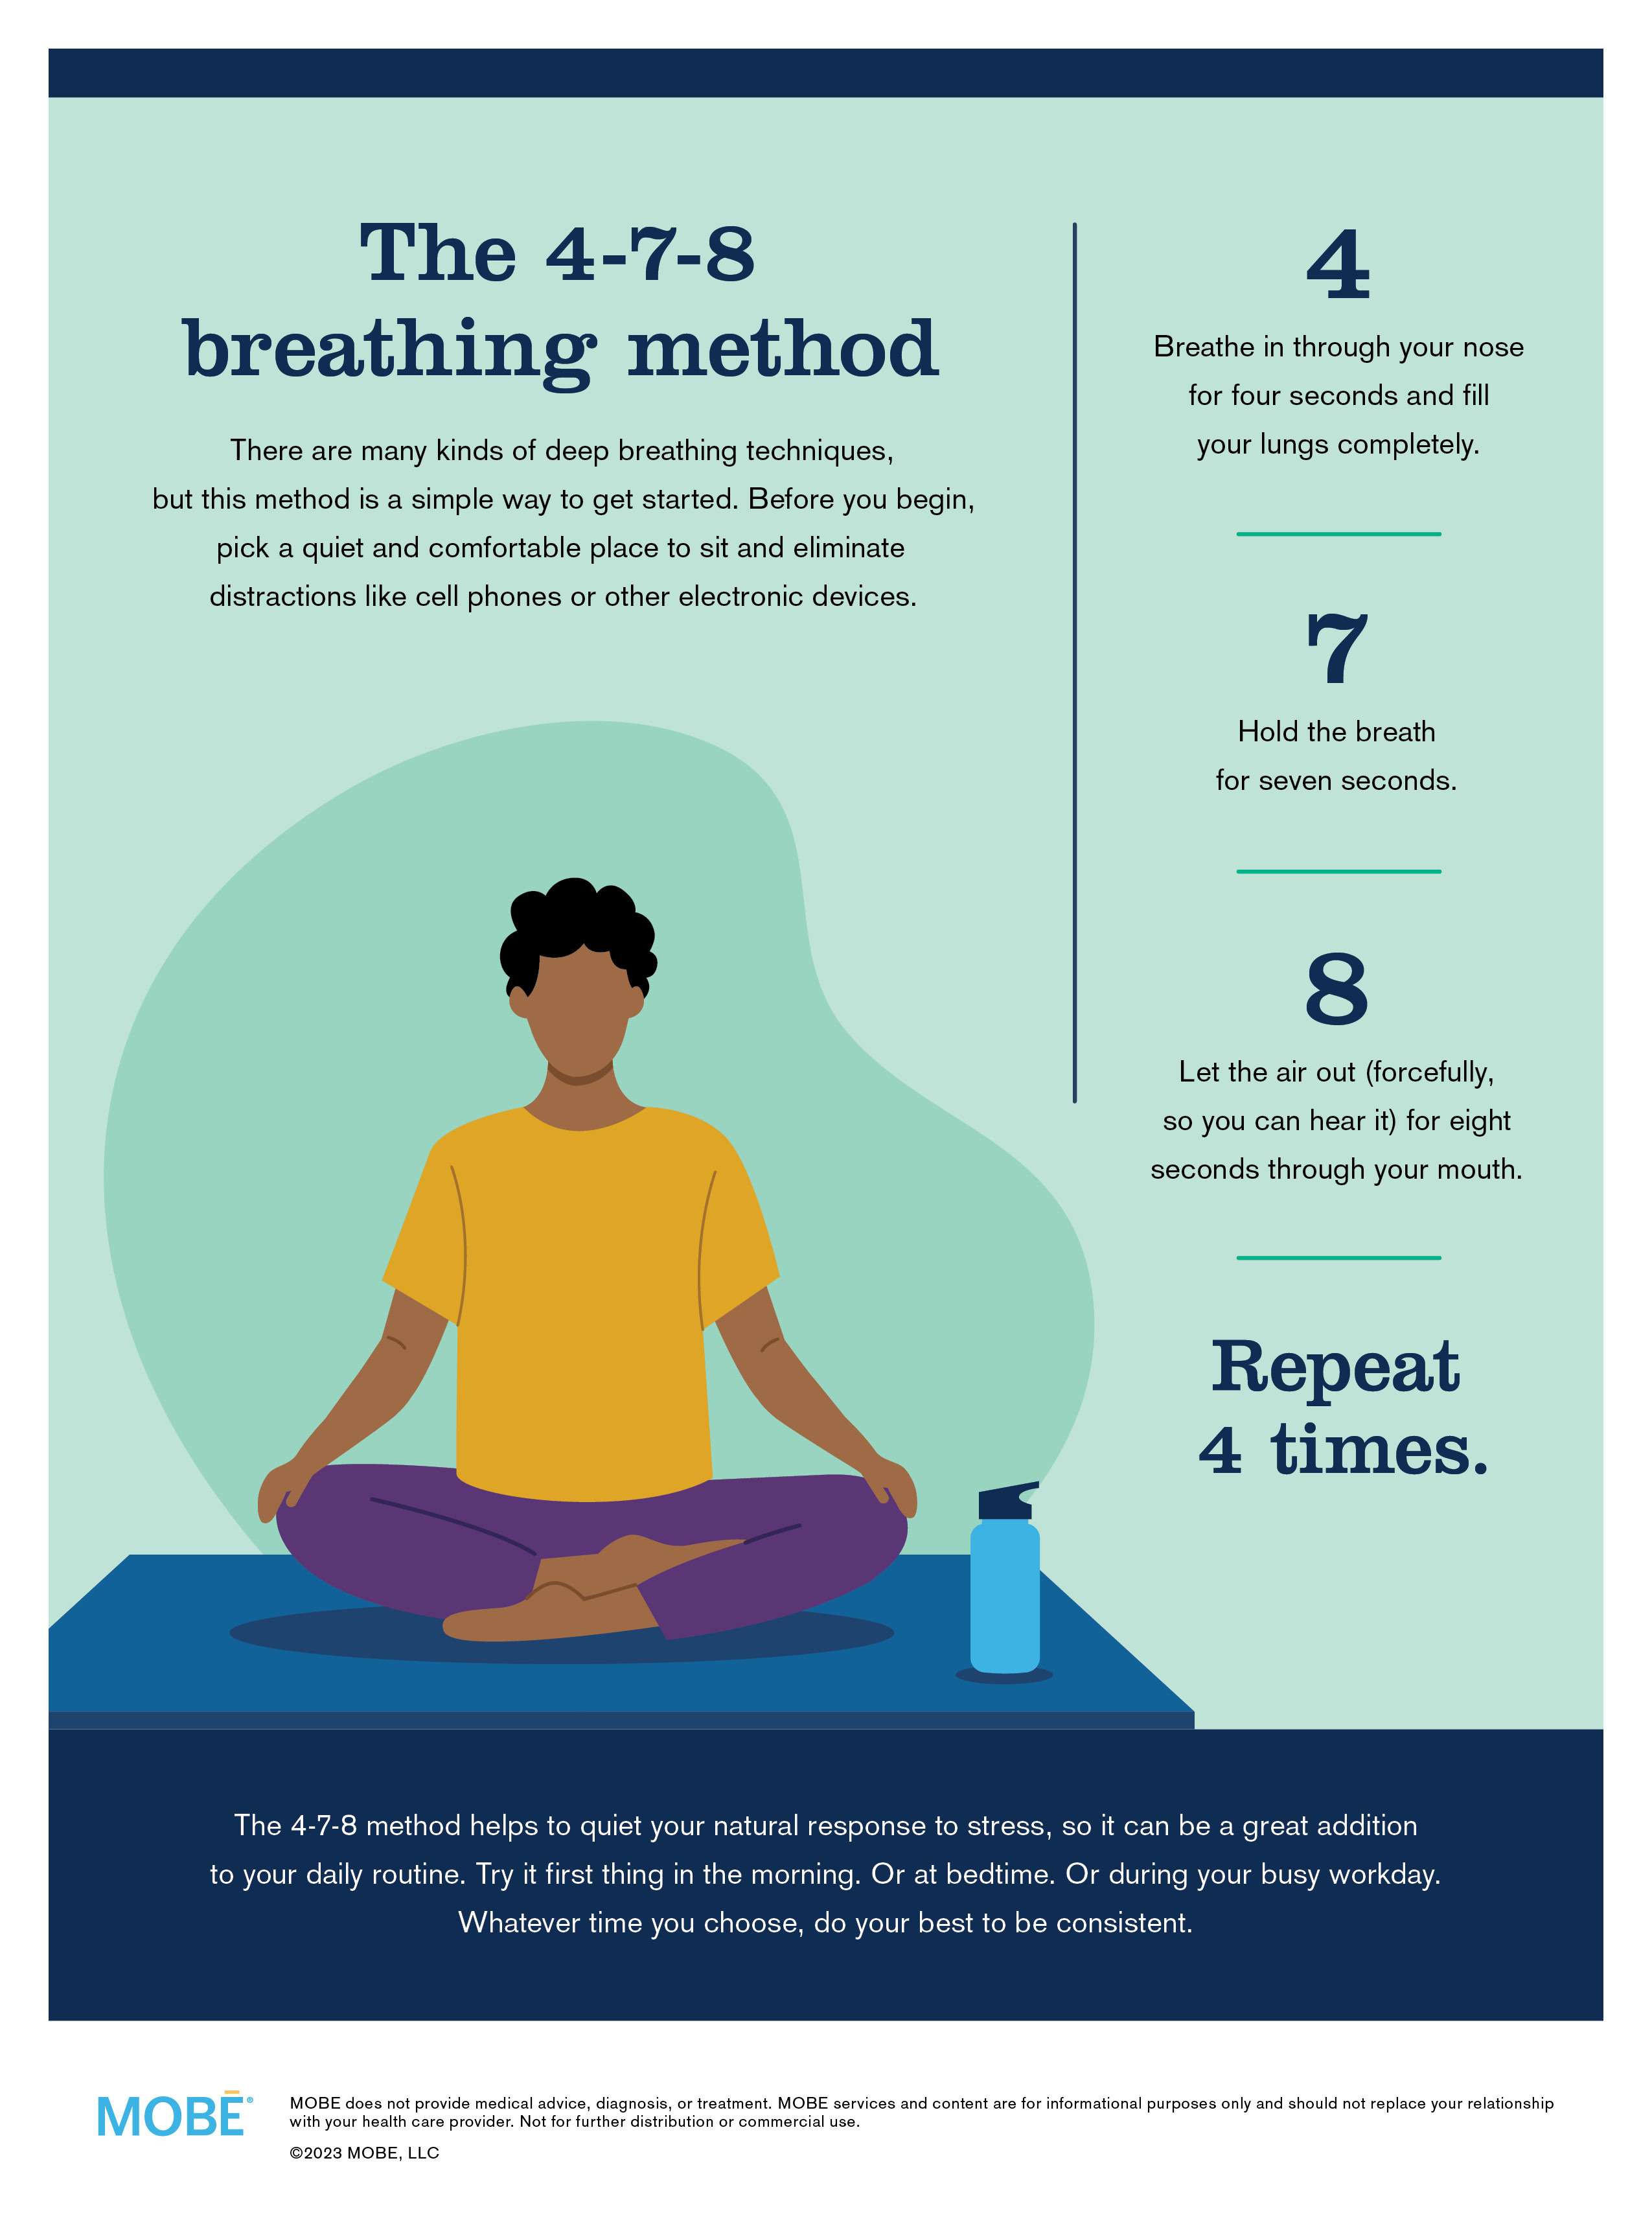 Just breathe: The 4-7-8 deep breathing method.